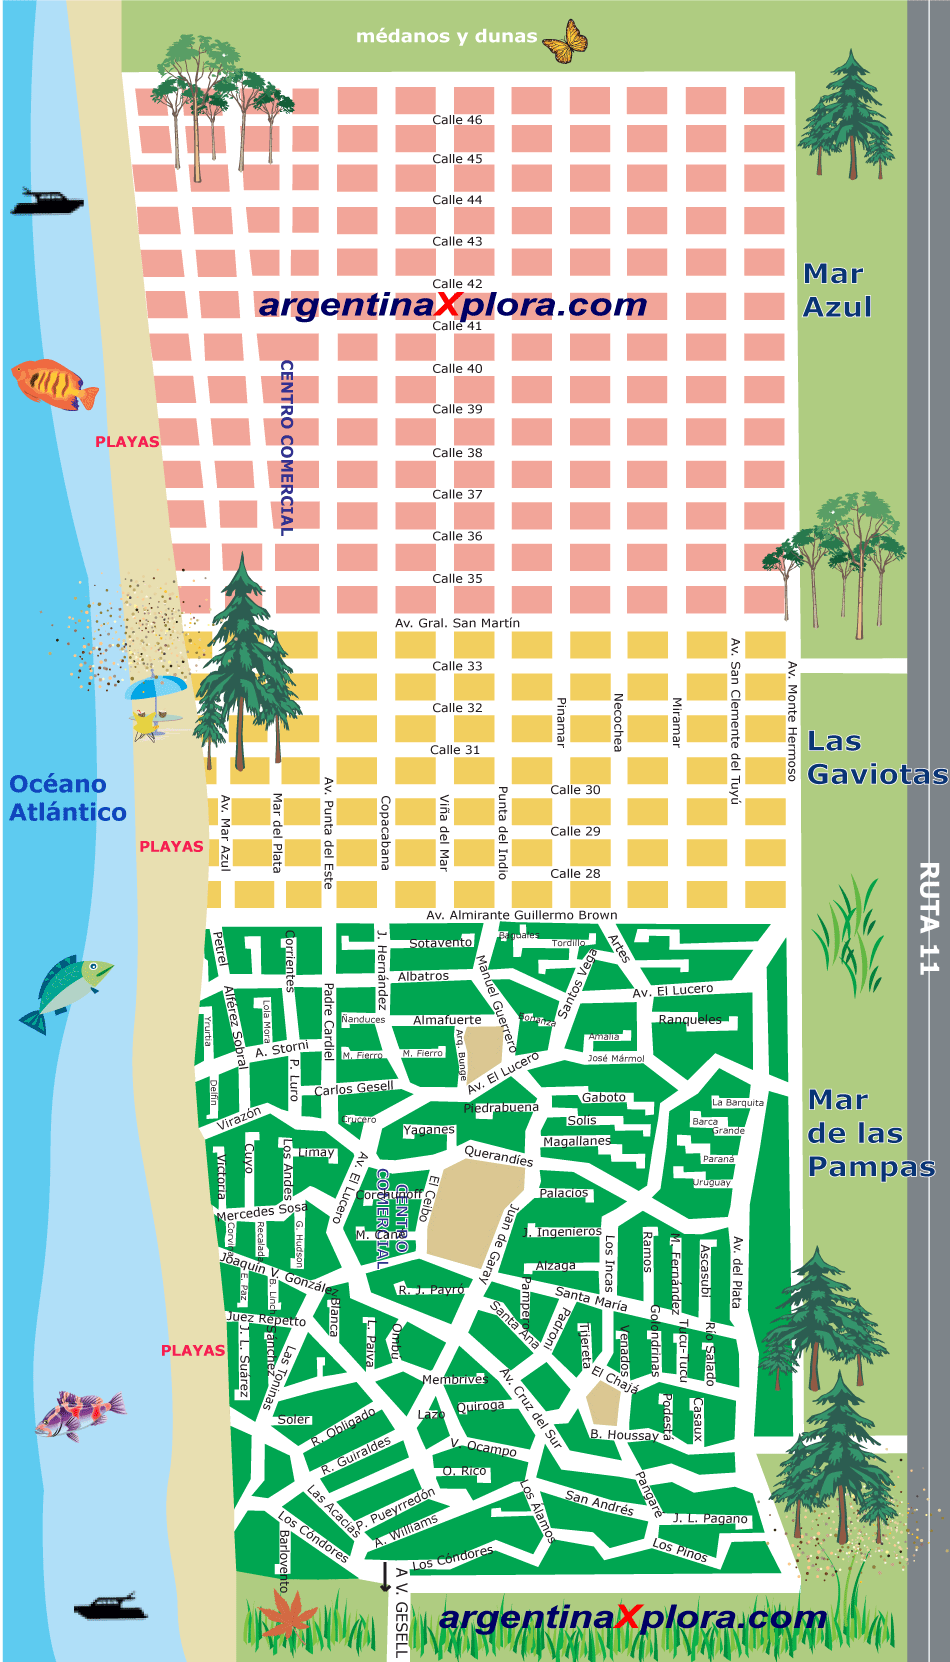 Mapa Plano de Mar de las Pampas Playa, Mar Azul y Las Gaviotas